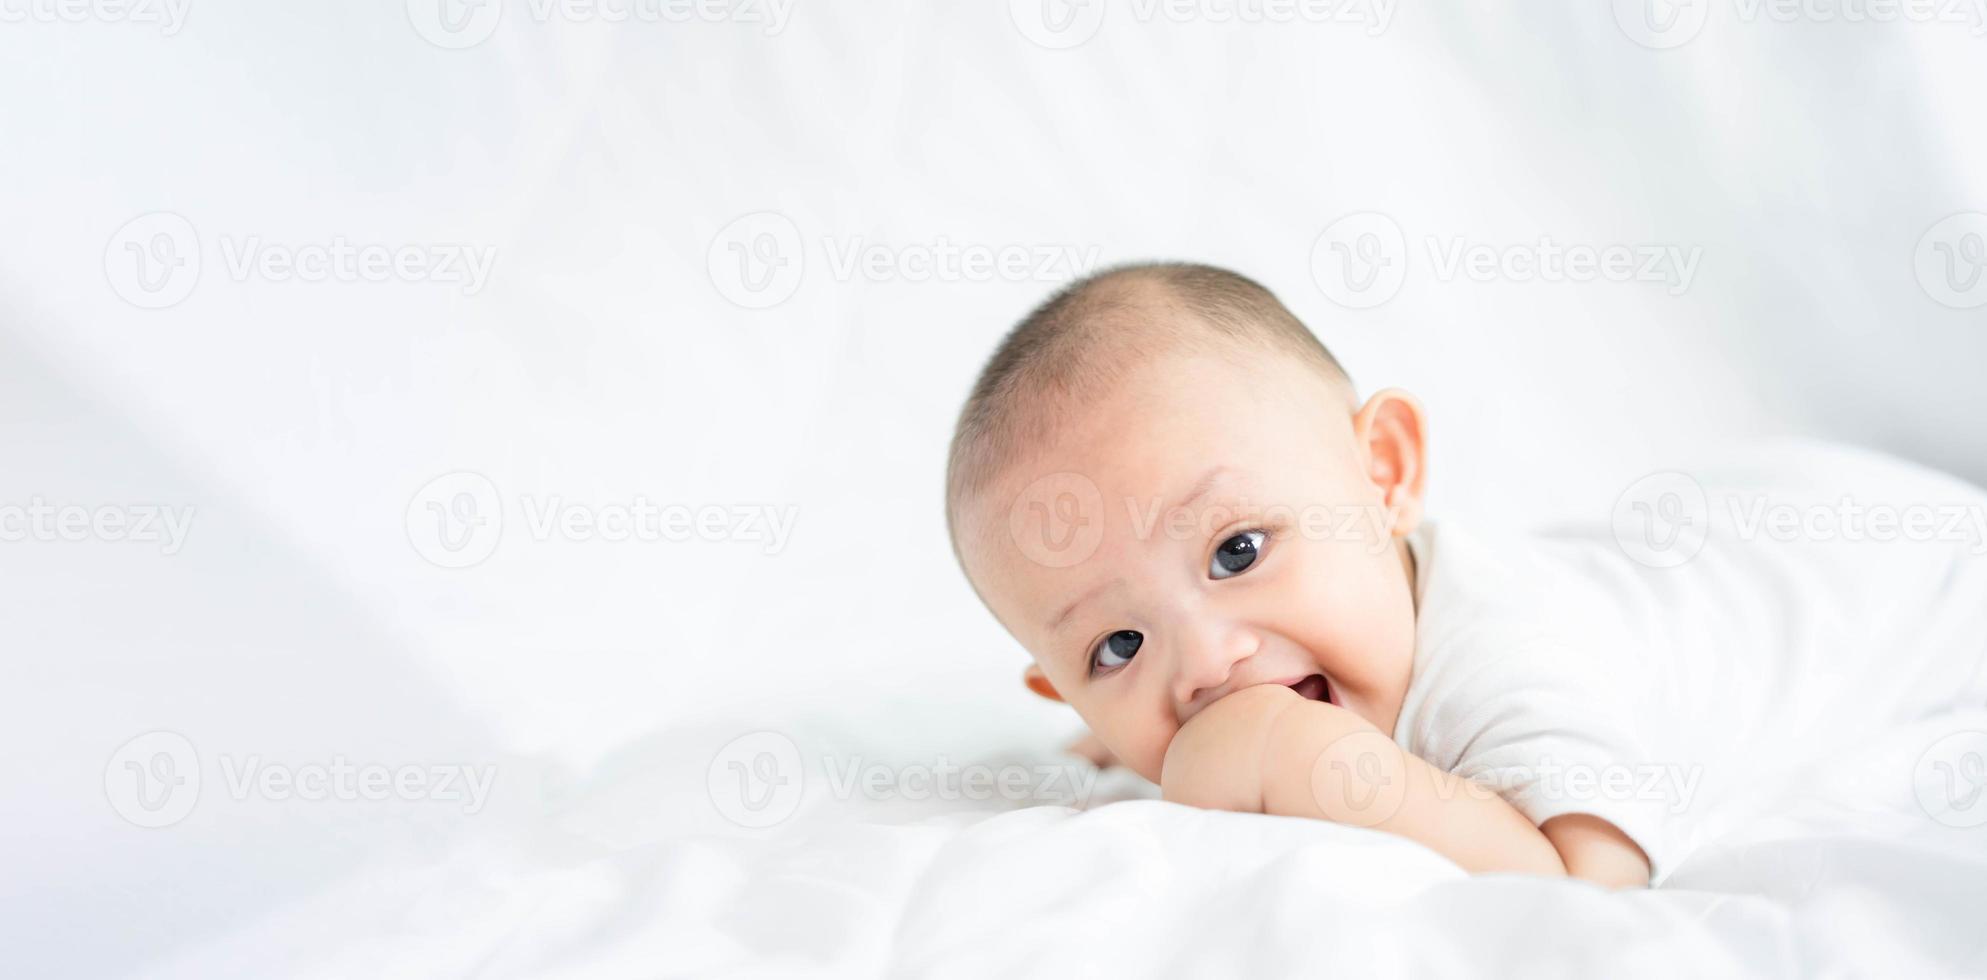 família feliz, bonito bebê recém-nascido asiático deitado jogar na cama branca olhe para a câmera com sorriso sorridente rosto feliz. pequena inocente criança adorável infantil no primeiro dia de vida. conceito de dia das mães. foto